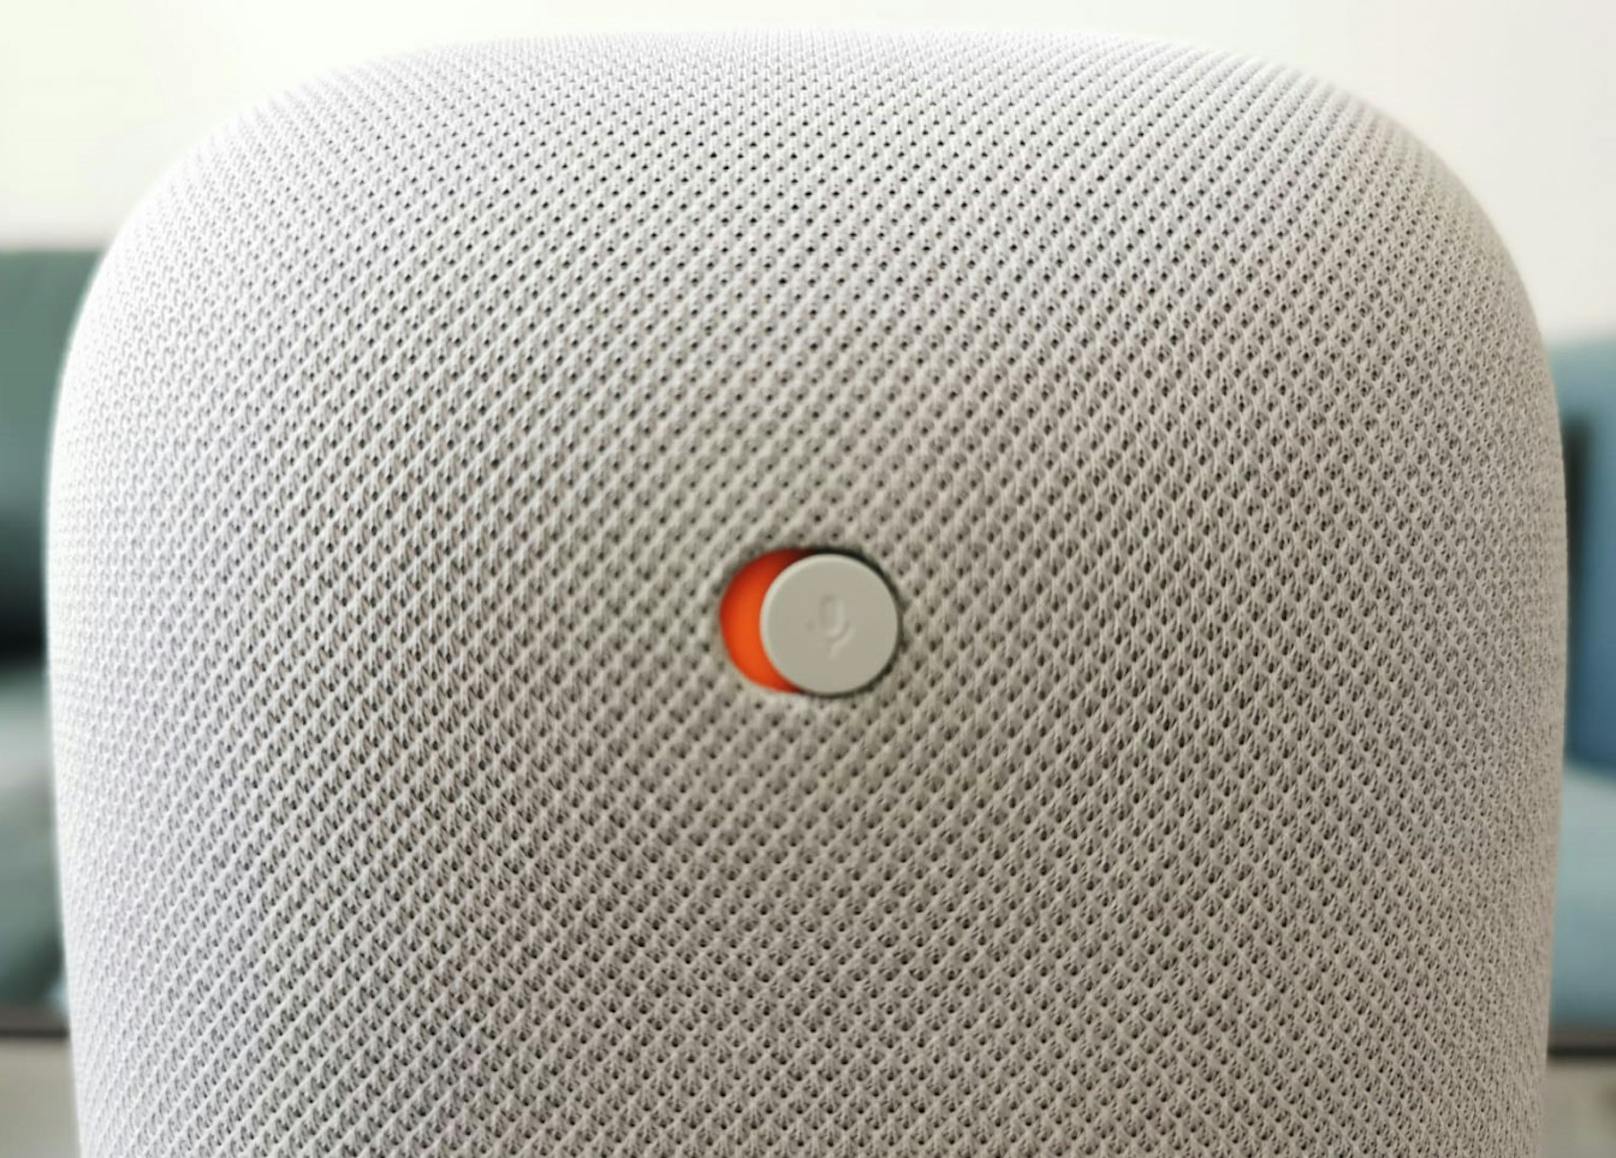 Auf der Rückseite wird das integrierte Mikrofon per Schieberegler deaktiviert, wenn Google nicht mitlauschen soll. An der Vorderseite färben sich die vier weißen Lichter in diesem Fall orange.